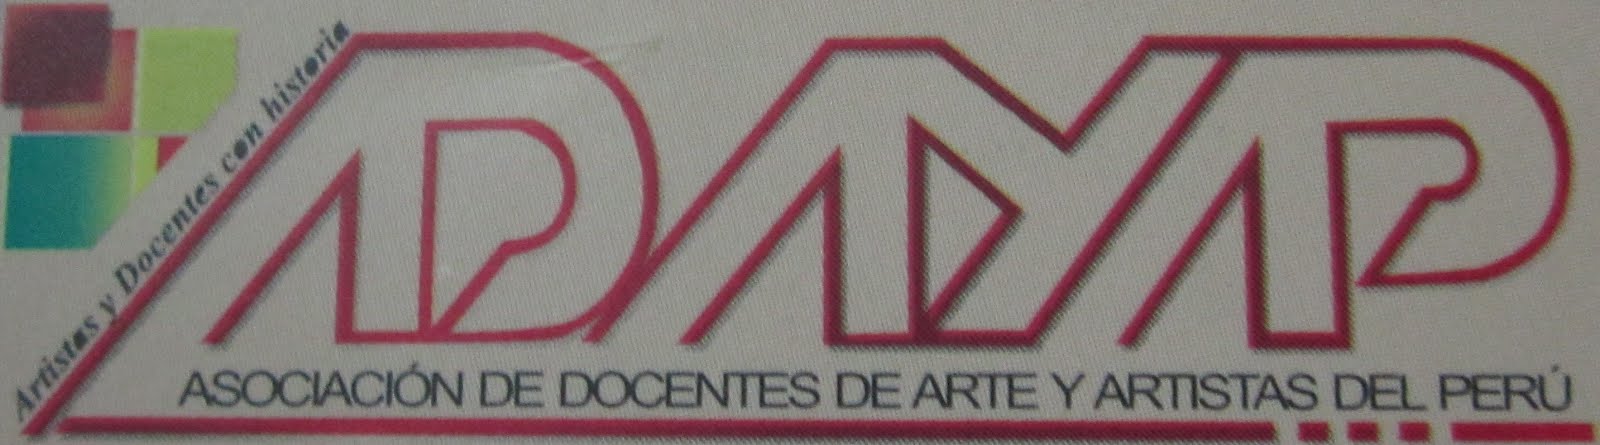 ASOCIACION DE DOCENTES DE ARTE Y ARTISTAS DEL PERU